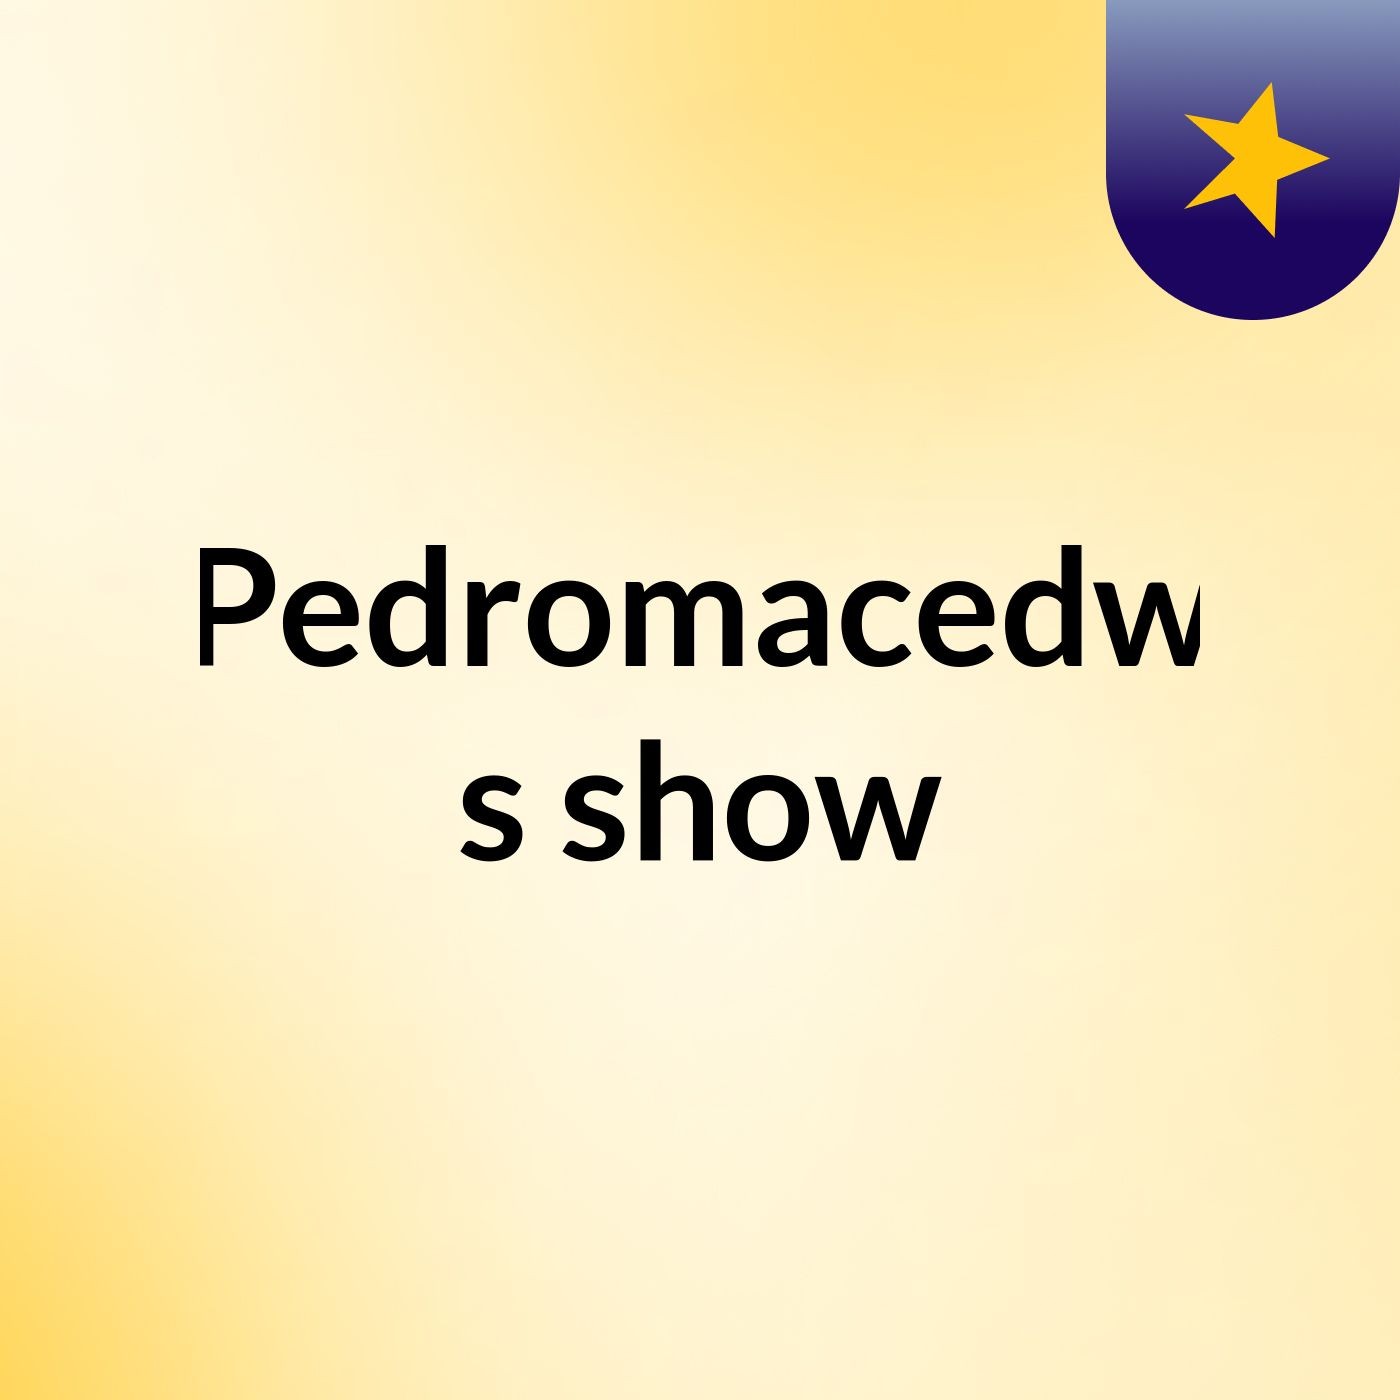 Pedromacedw's show